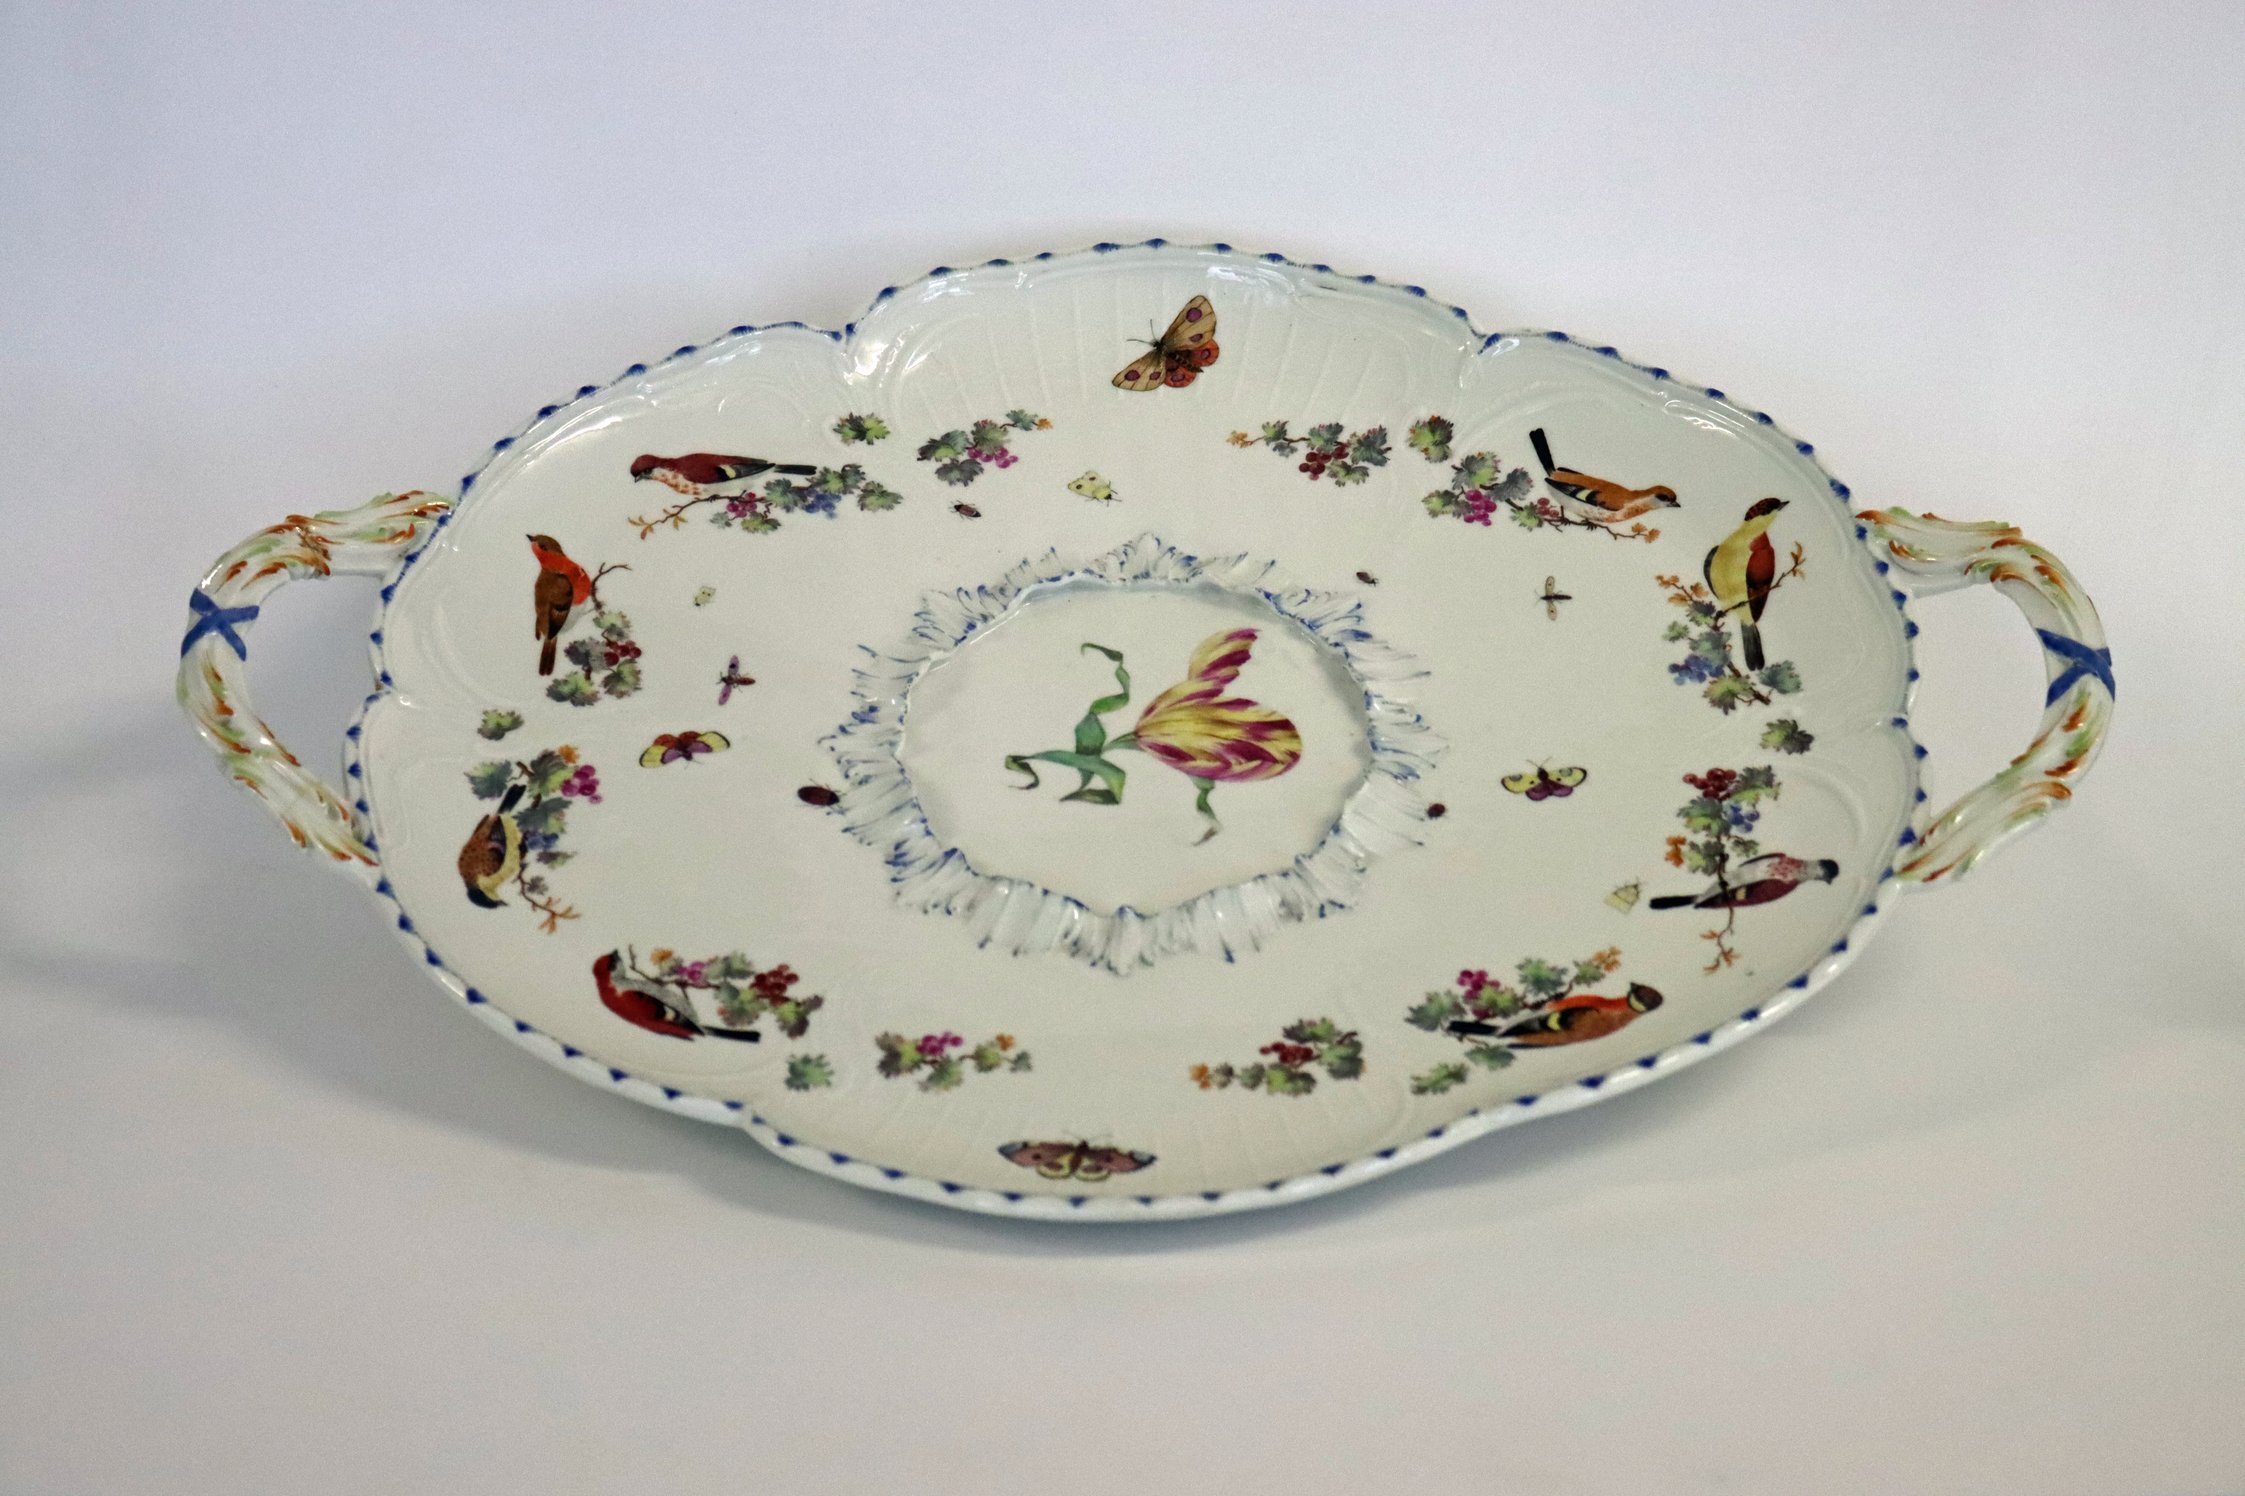 Porzellanservice aus Kartlow: Ovale Platte mit Blumen- und Vogelmotiven